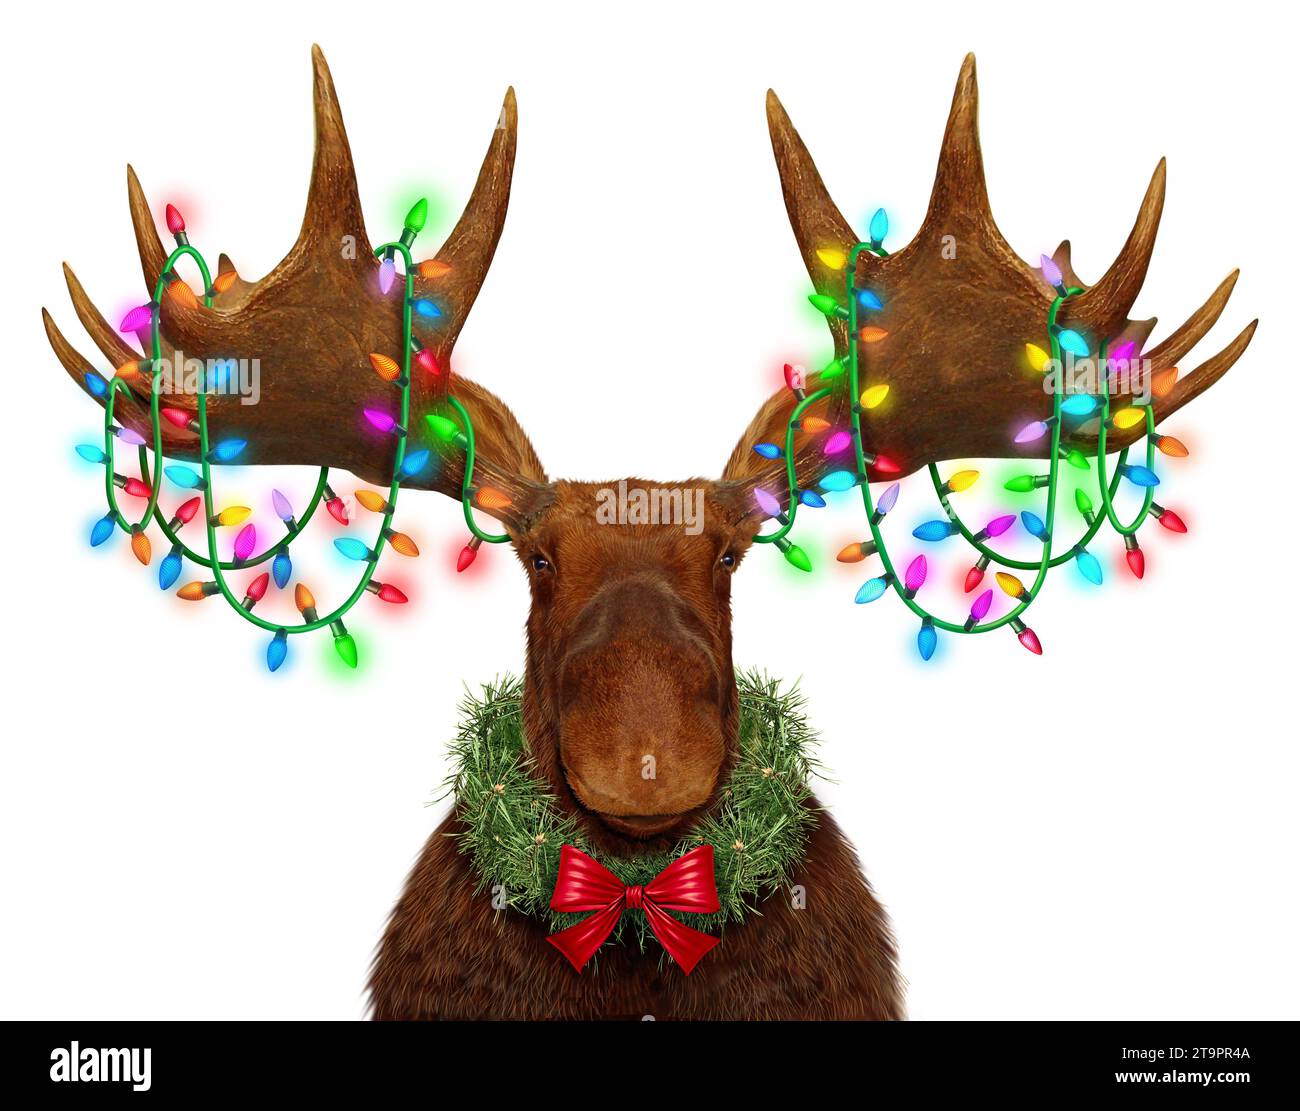 Lustige Holiday Elch Geweihe mit festlichen Lichtern als skurriles lustiges, lustiges Tier im nördlichen Wald dekoriert mit hell leuchtendem traditionellem Weihnachtslicht oder Stockfoto